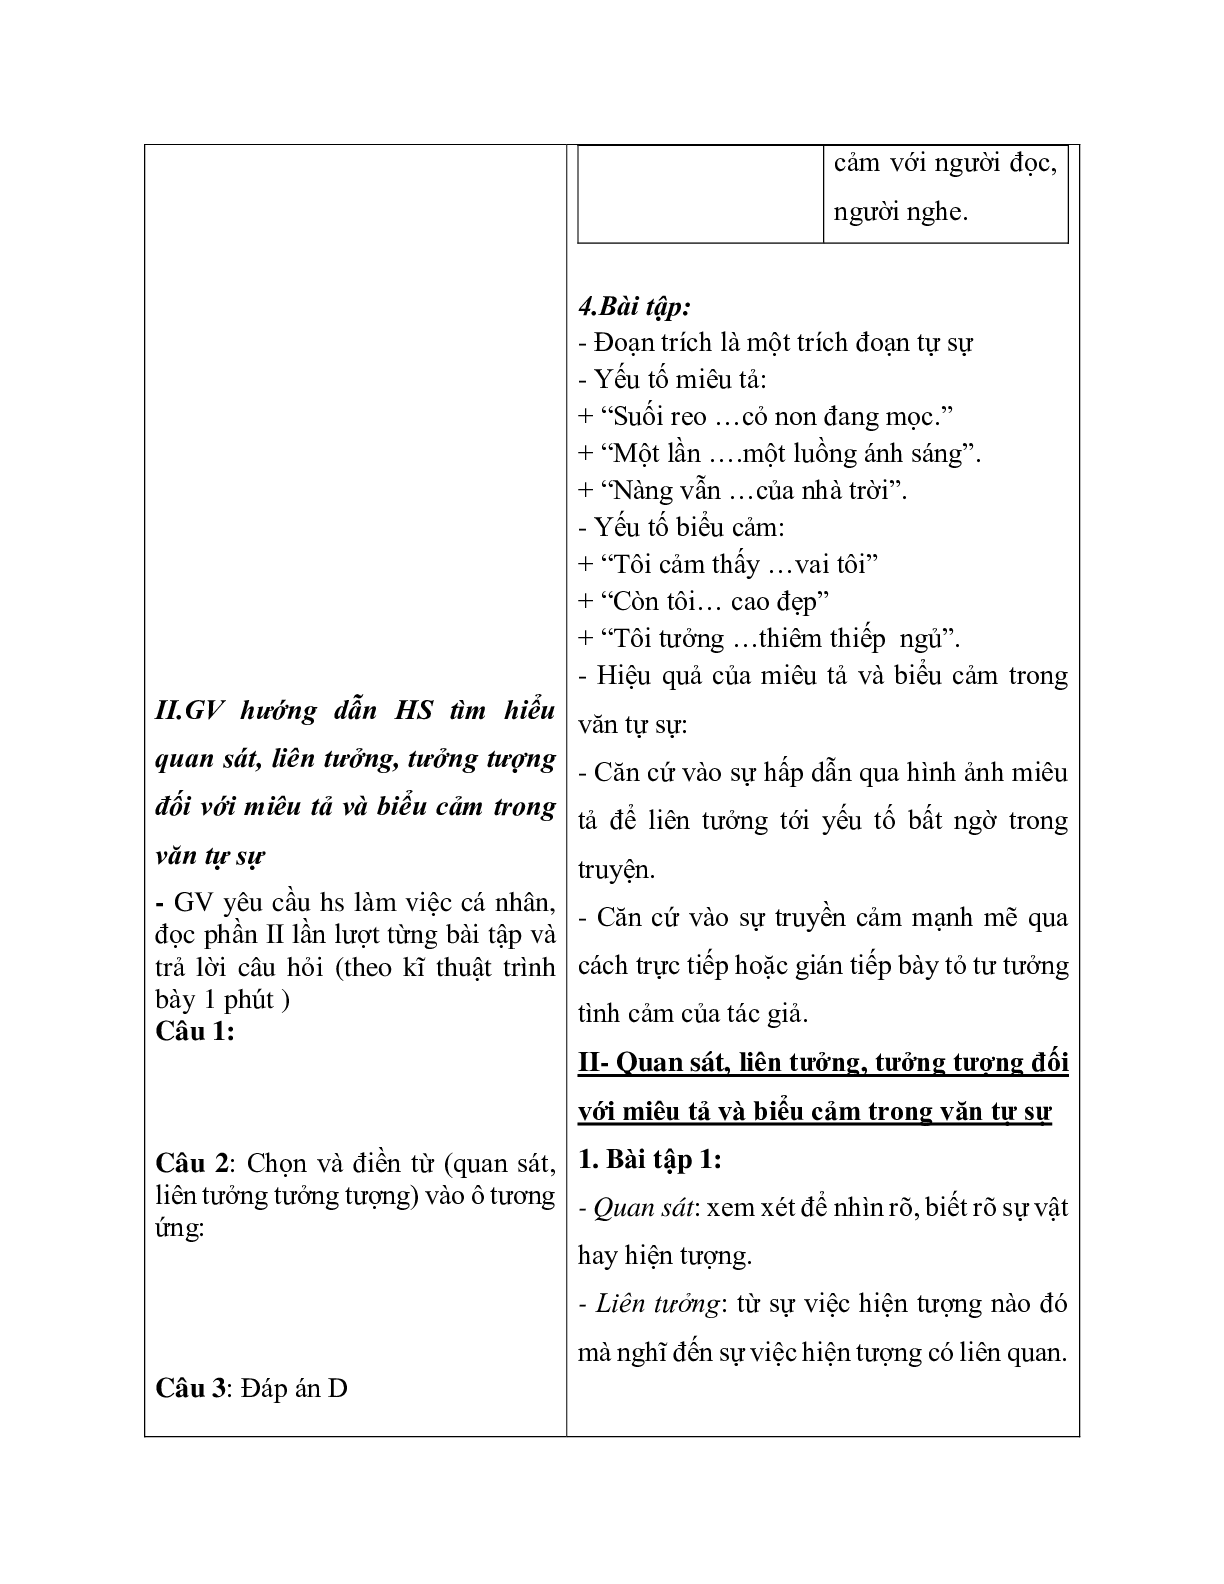 Giáo án ngữ văn lớp 10 Tiết 20: Miêu tả và biểu cản trong bài văn tự sự (trang 4)